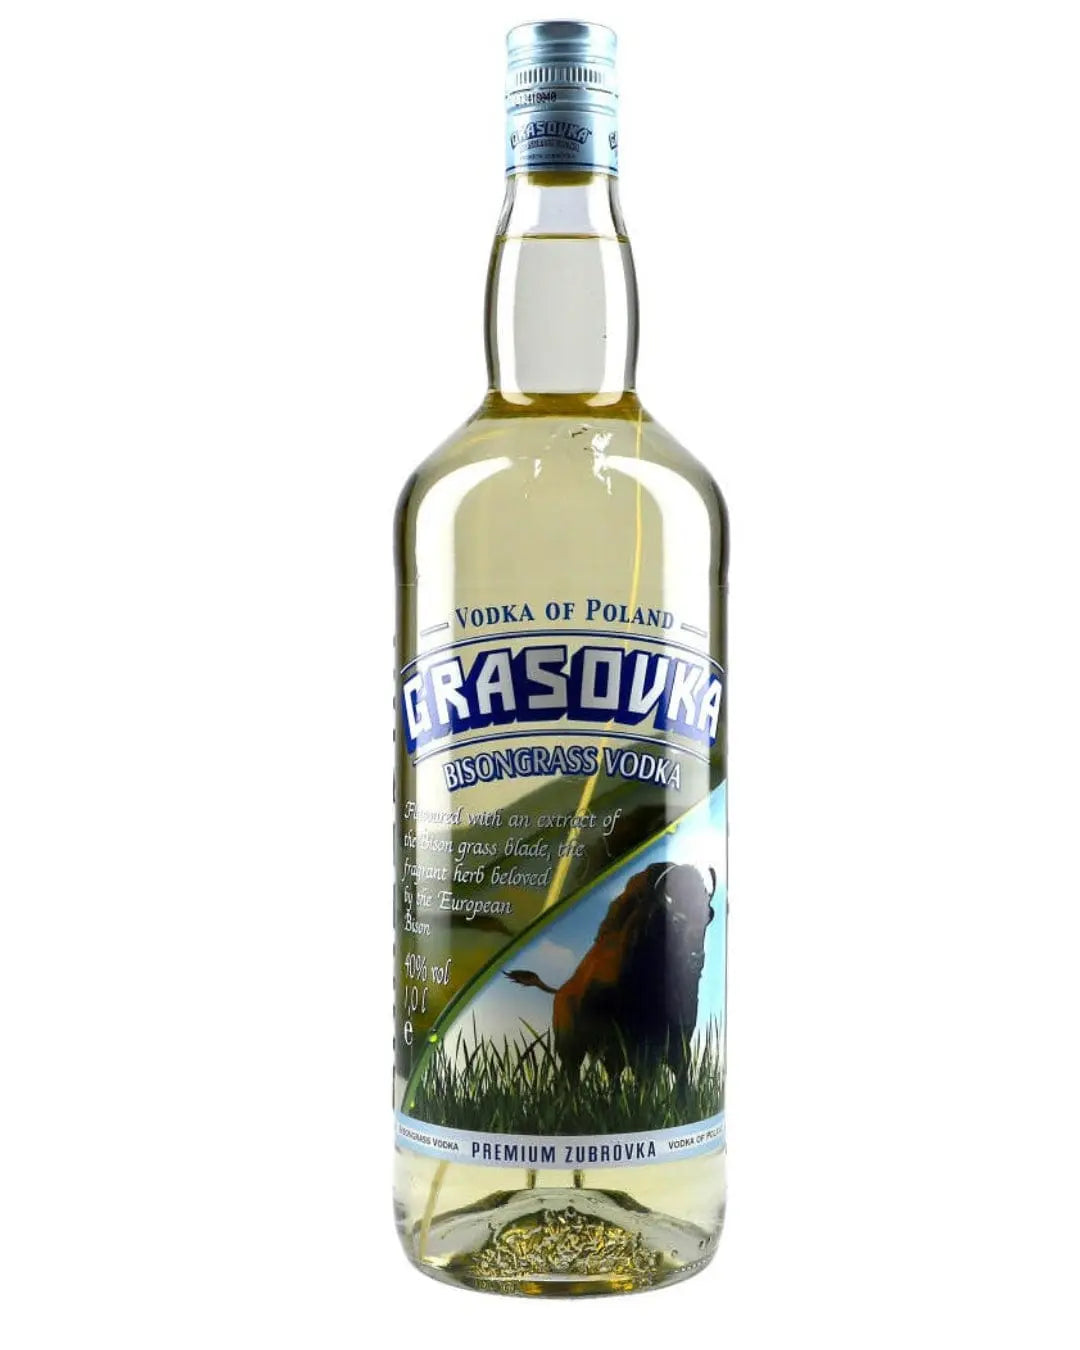 Grasovka Bisongrass Vodka, 70 cl Vodka